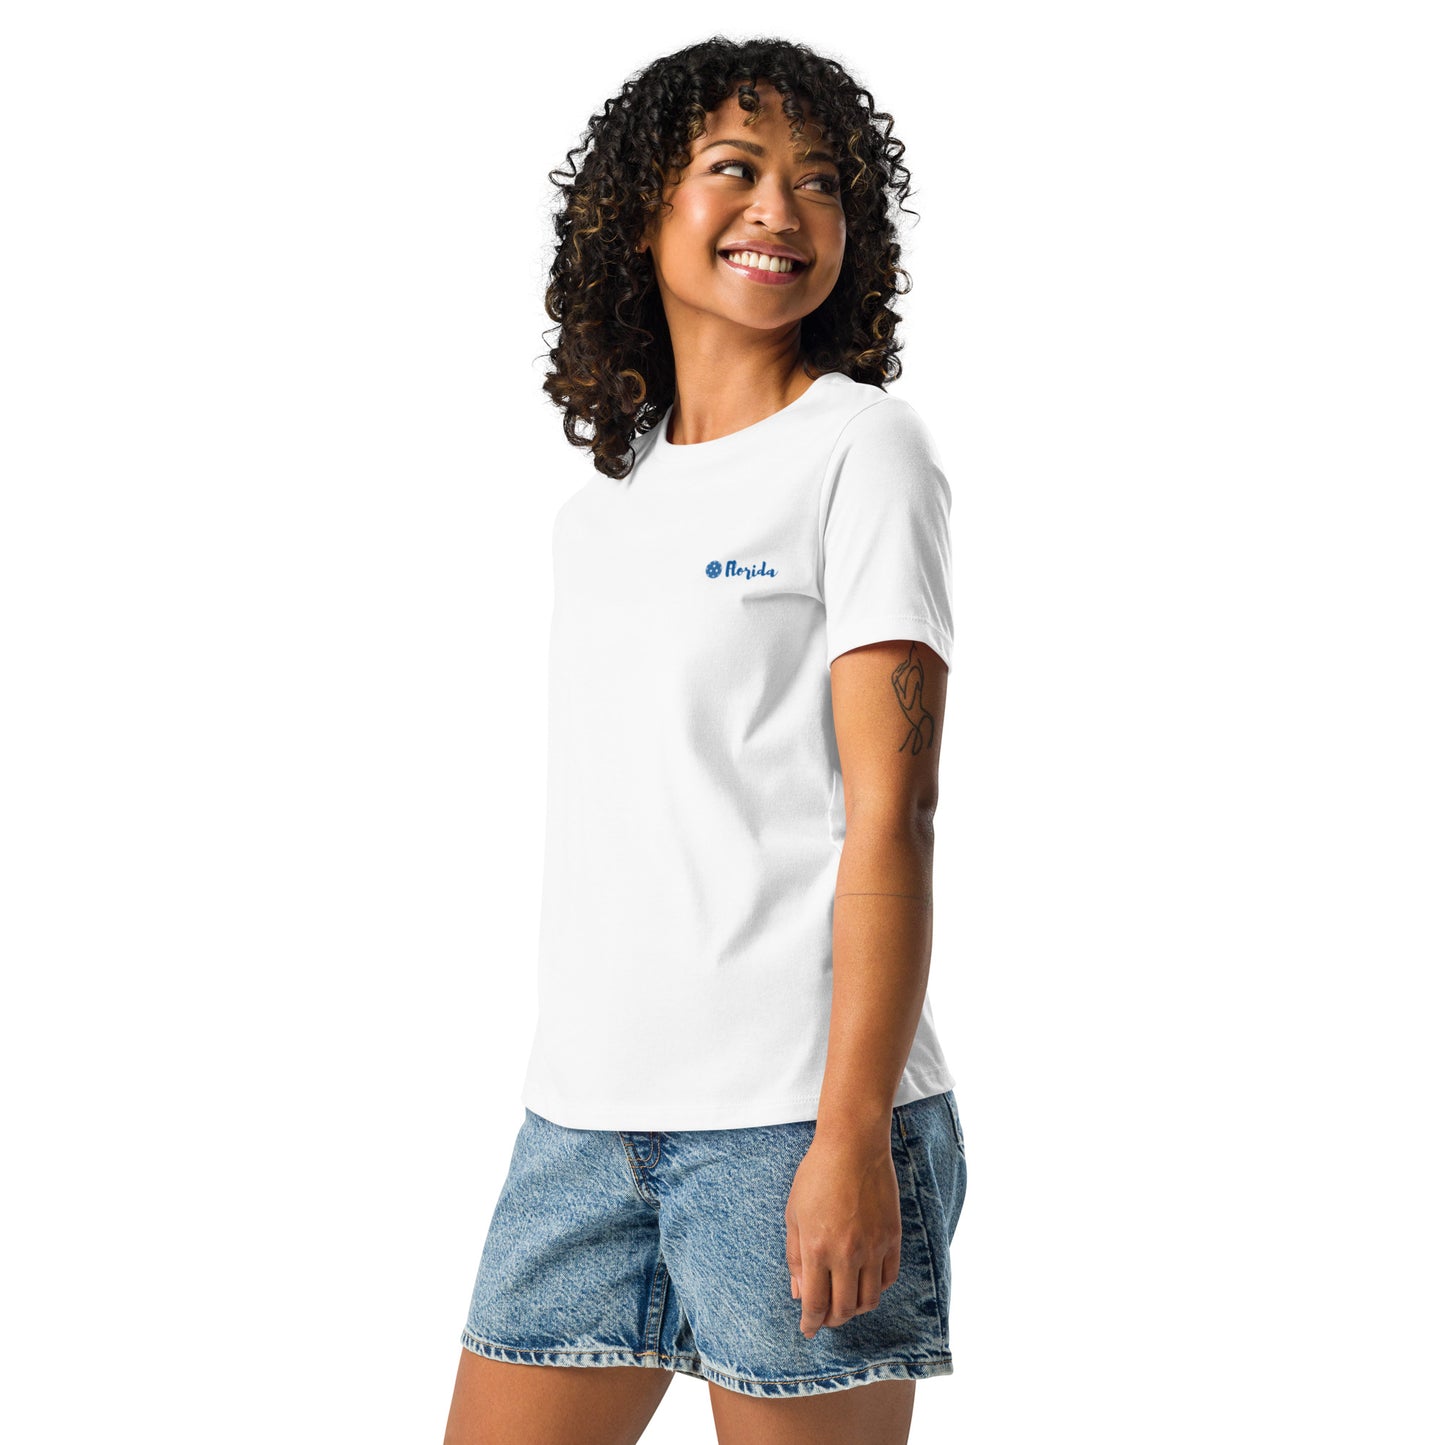 Women's Florida Pickleball T-Shirt